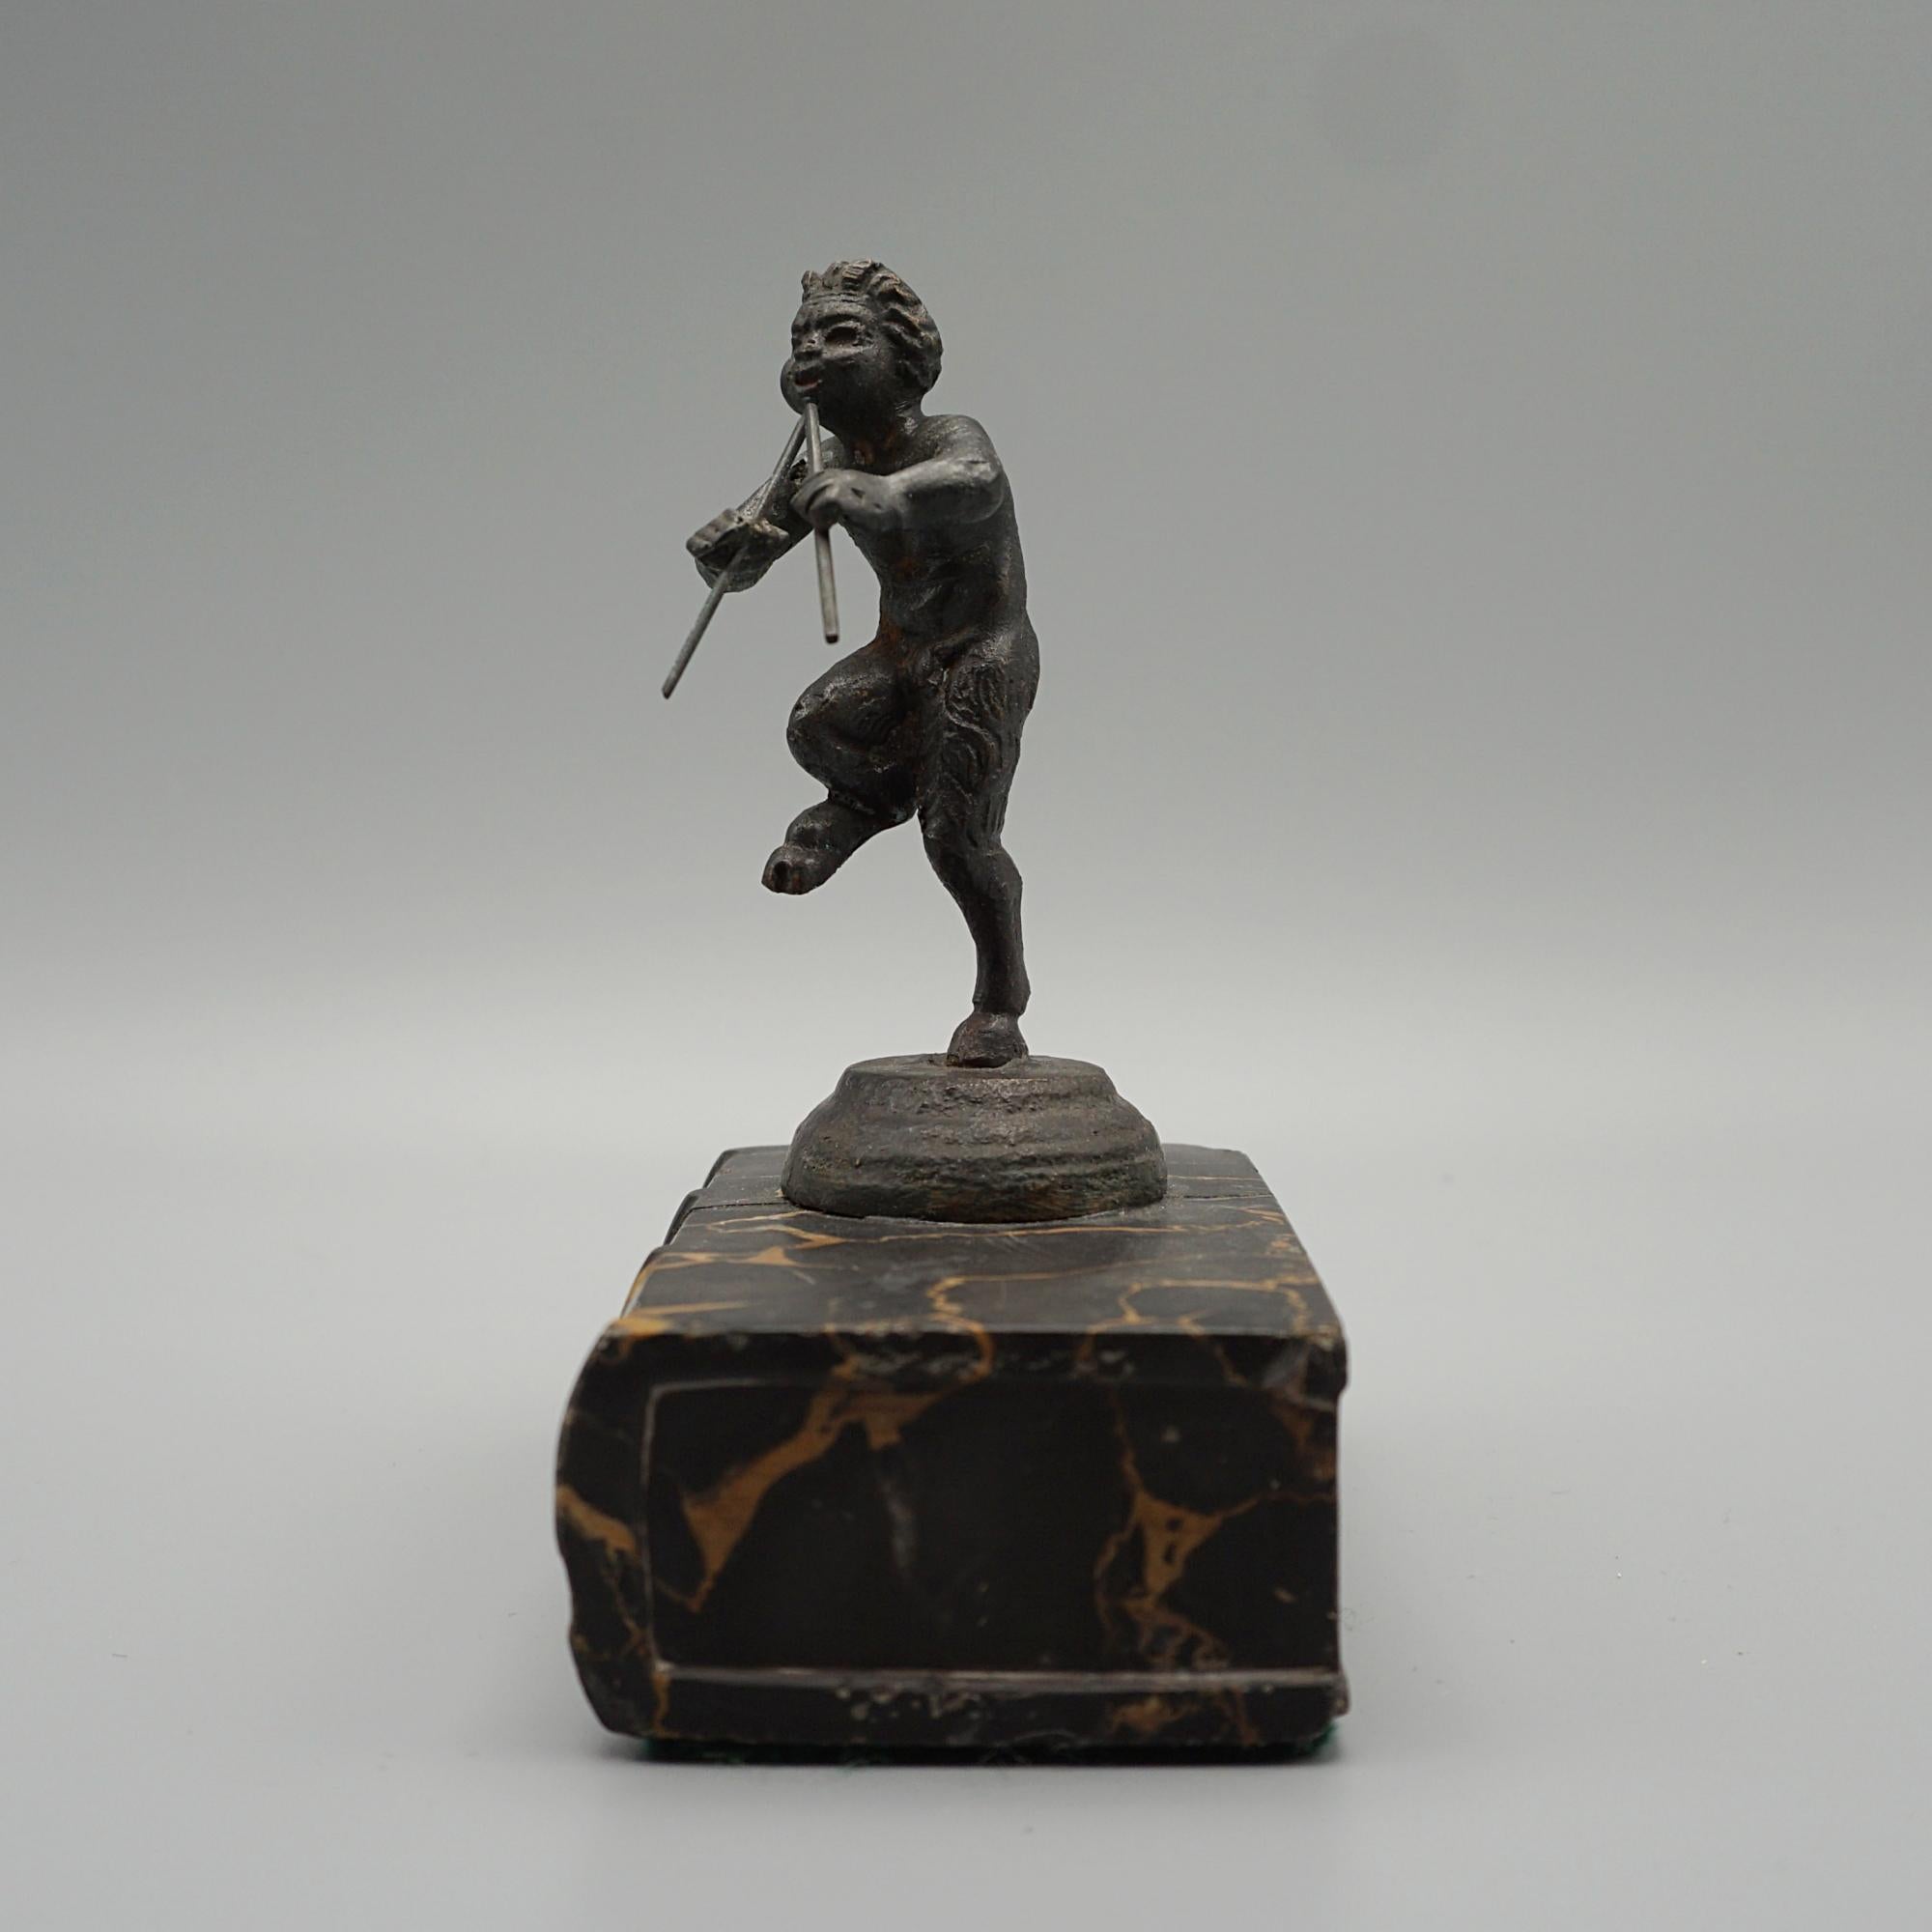 Eine Grand-Tour-Figur des pfeifenden Pan aus dem späten 19. Jahrhundert auf einem Marmorbuchsockel. Bronze und Marmor. 



